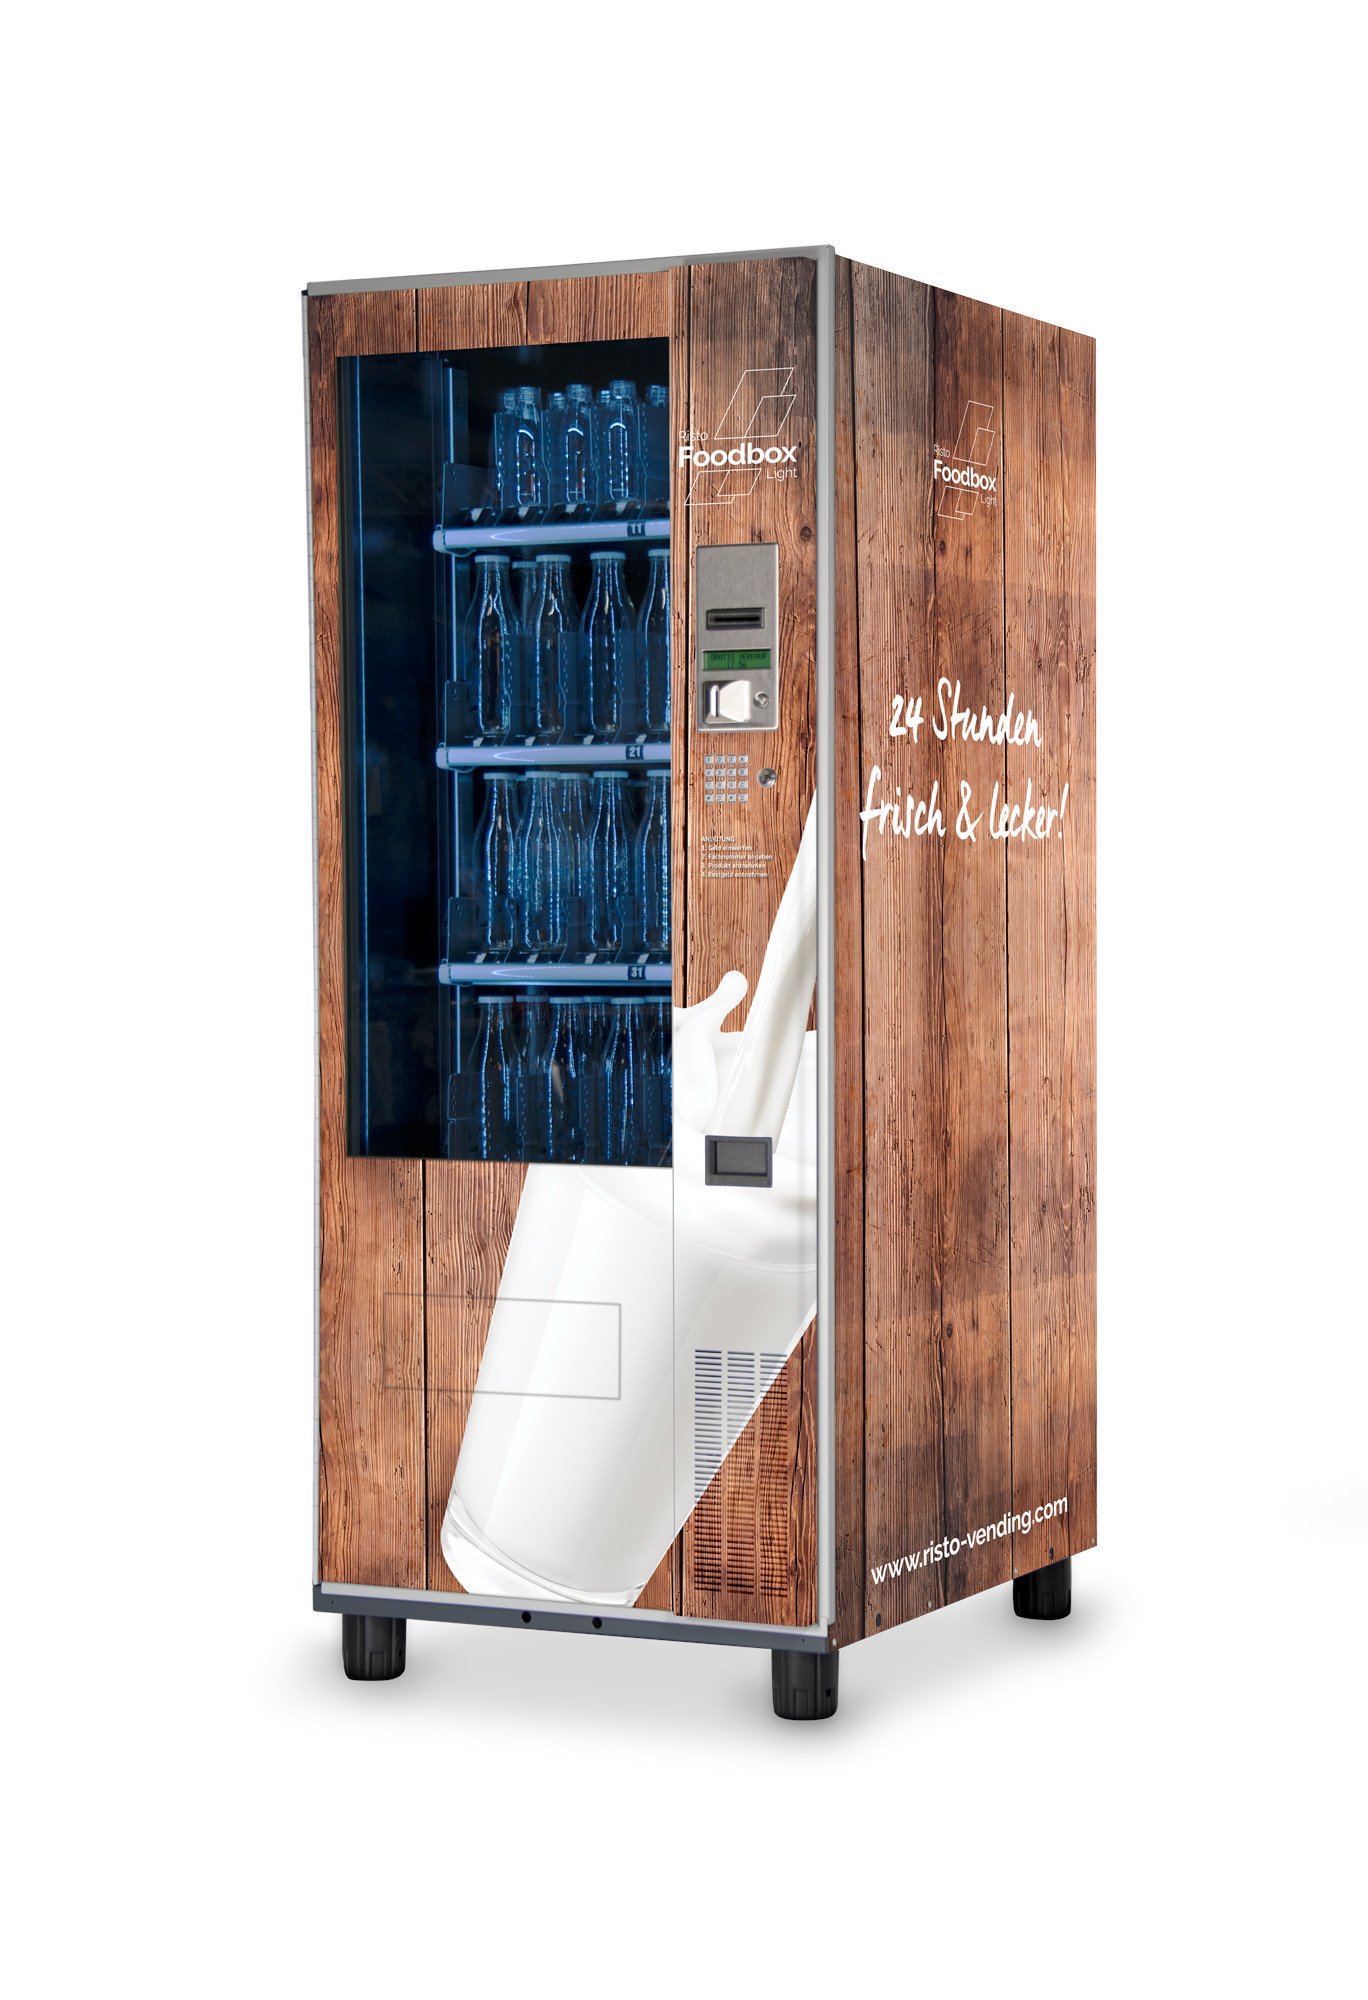 Flaschenautomat Foodbox Light Flaschenautomat-Warenautomat-Foodbox-Light-Bottle-Vending-Machine-Braun